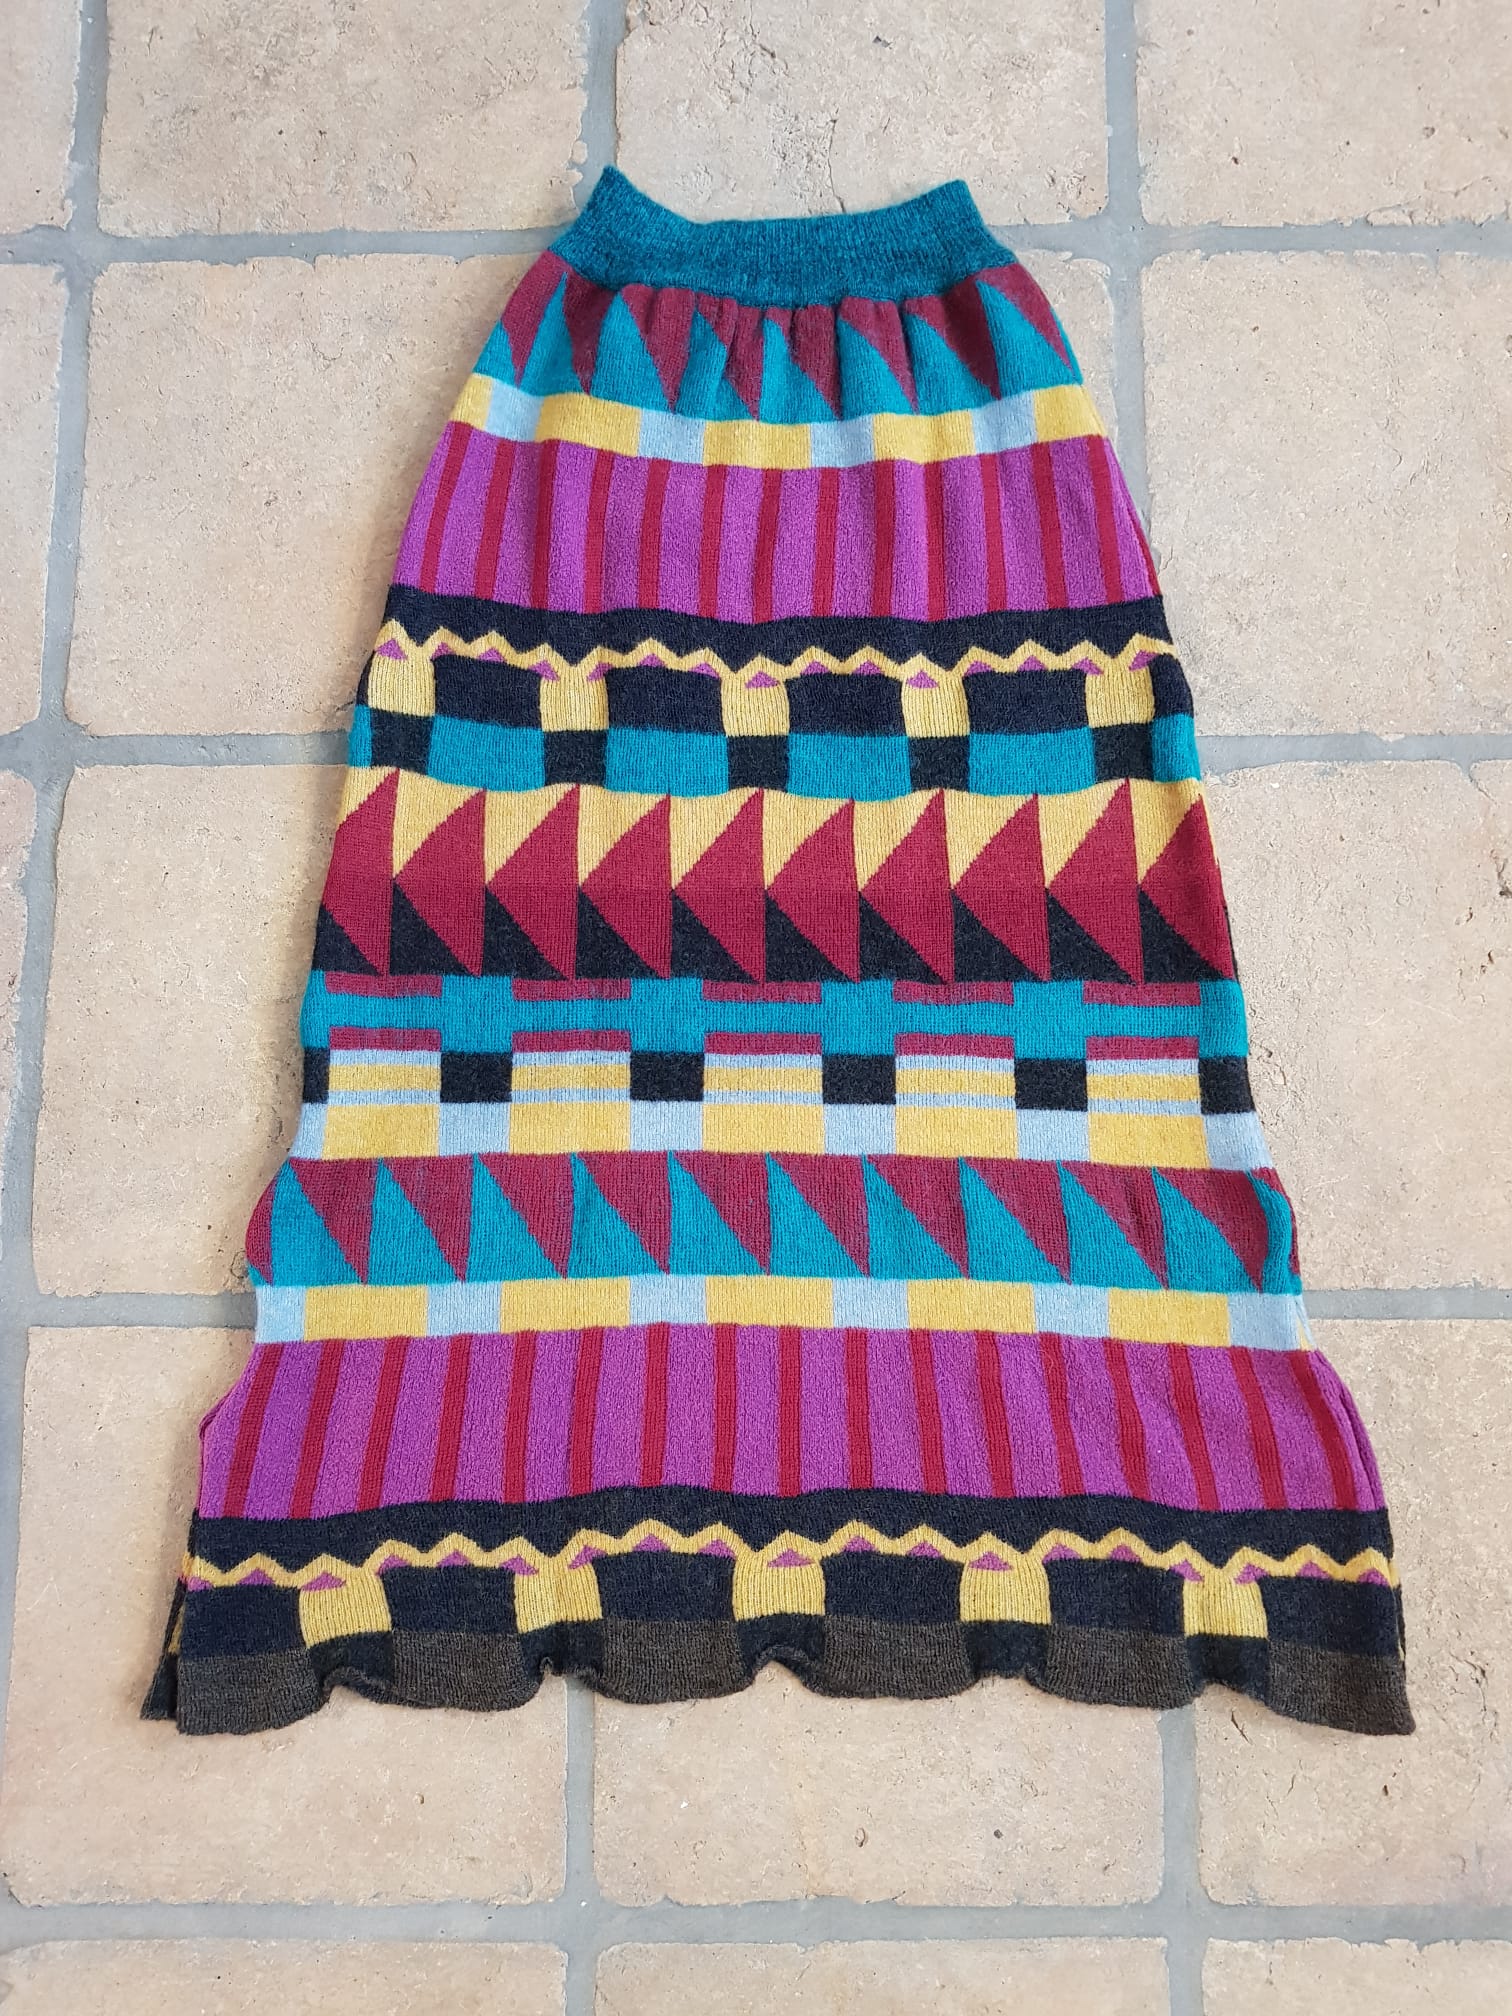 Kronthaler/Westwood - Skirt knit  (matches Sweater as a2 piece set)